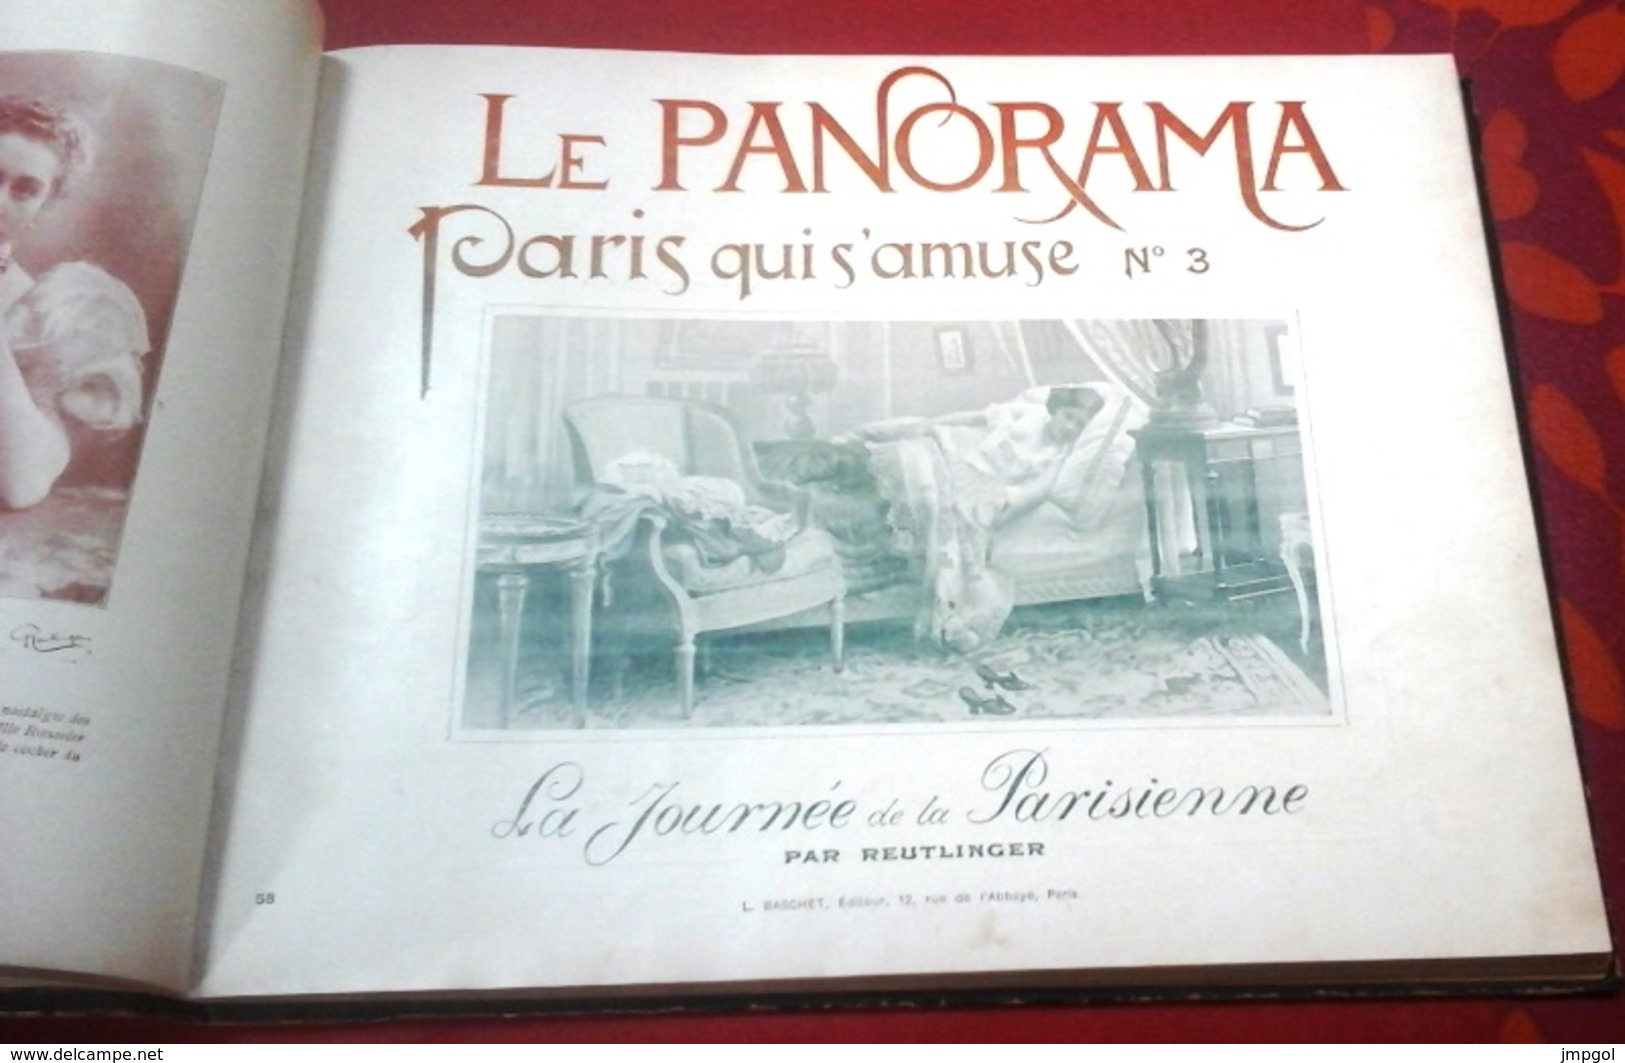 Reliure Le Panorama Paris Qui s'amuse 1890 9 Numéros Café Concert Yvette Guilbert, Polaire, Cléo de Mérode,La Goulue...